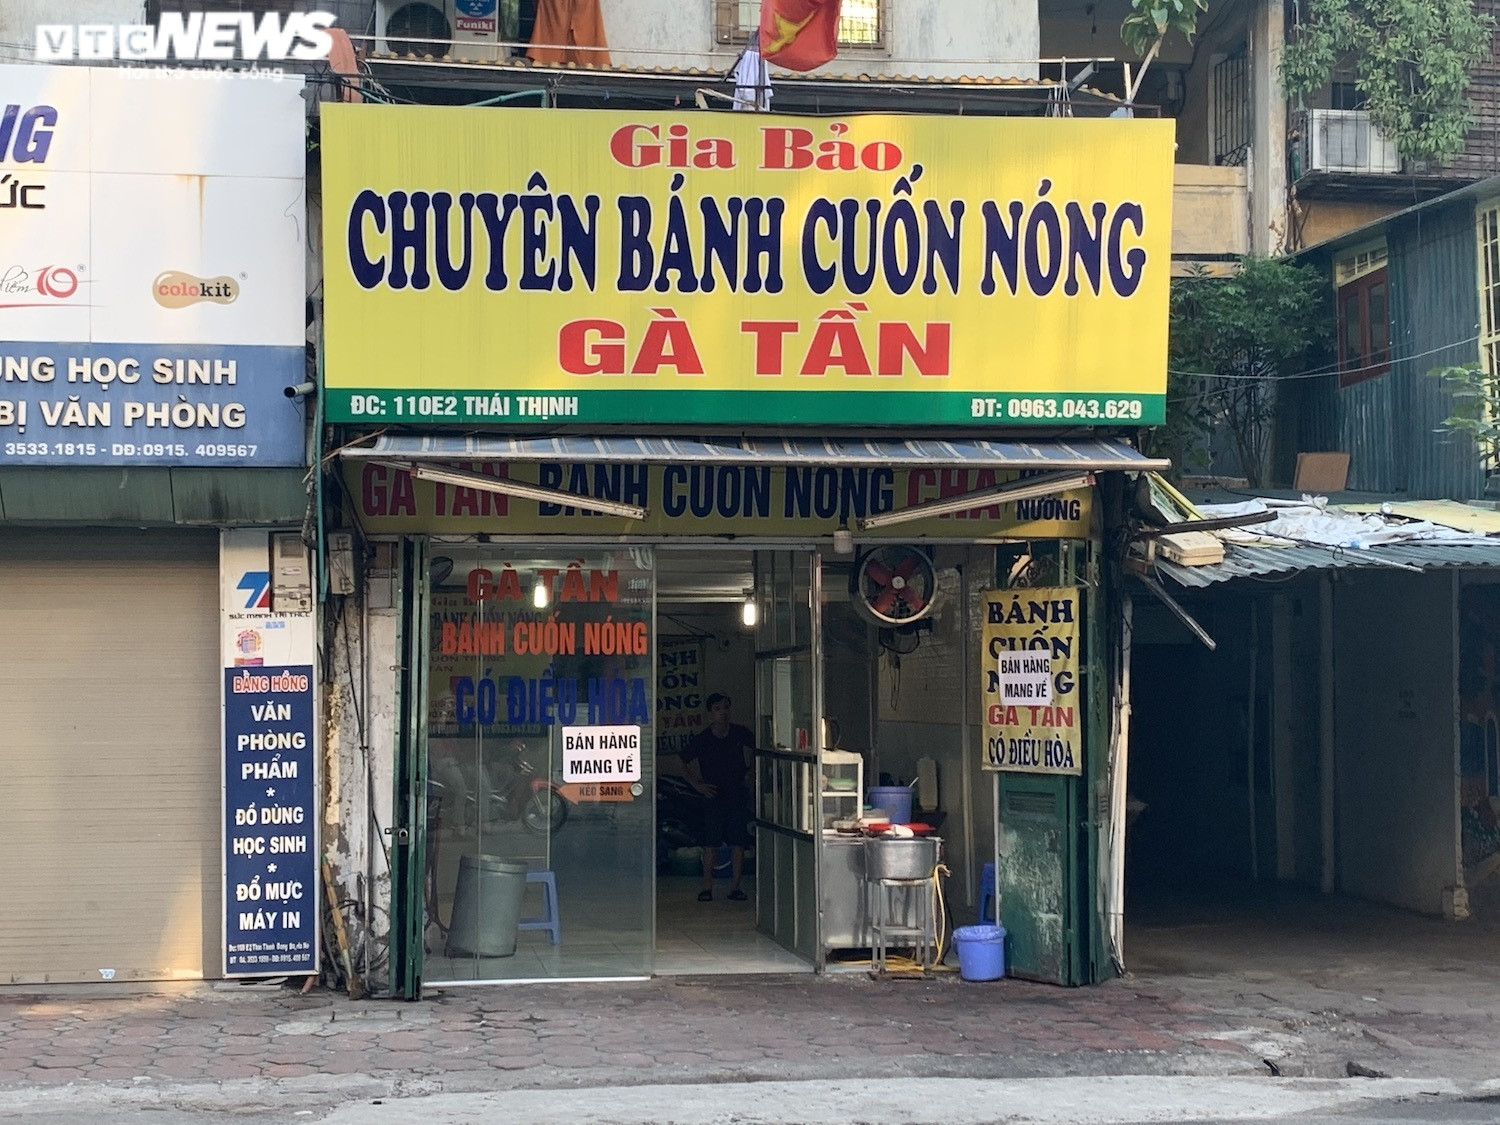 Phòng COVID-19, hàng quán ăn sáng ở Hà Nội nơi đóng cửa, nơi chỉ bán mang về  - 9